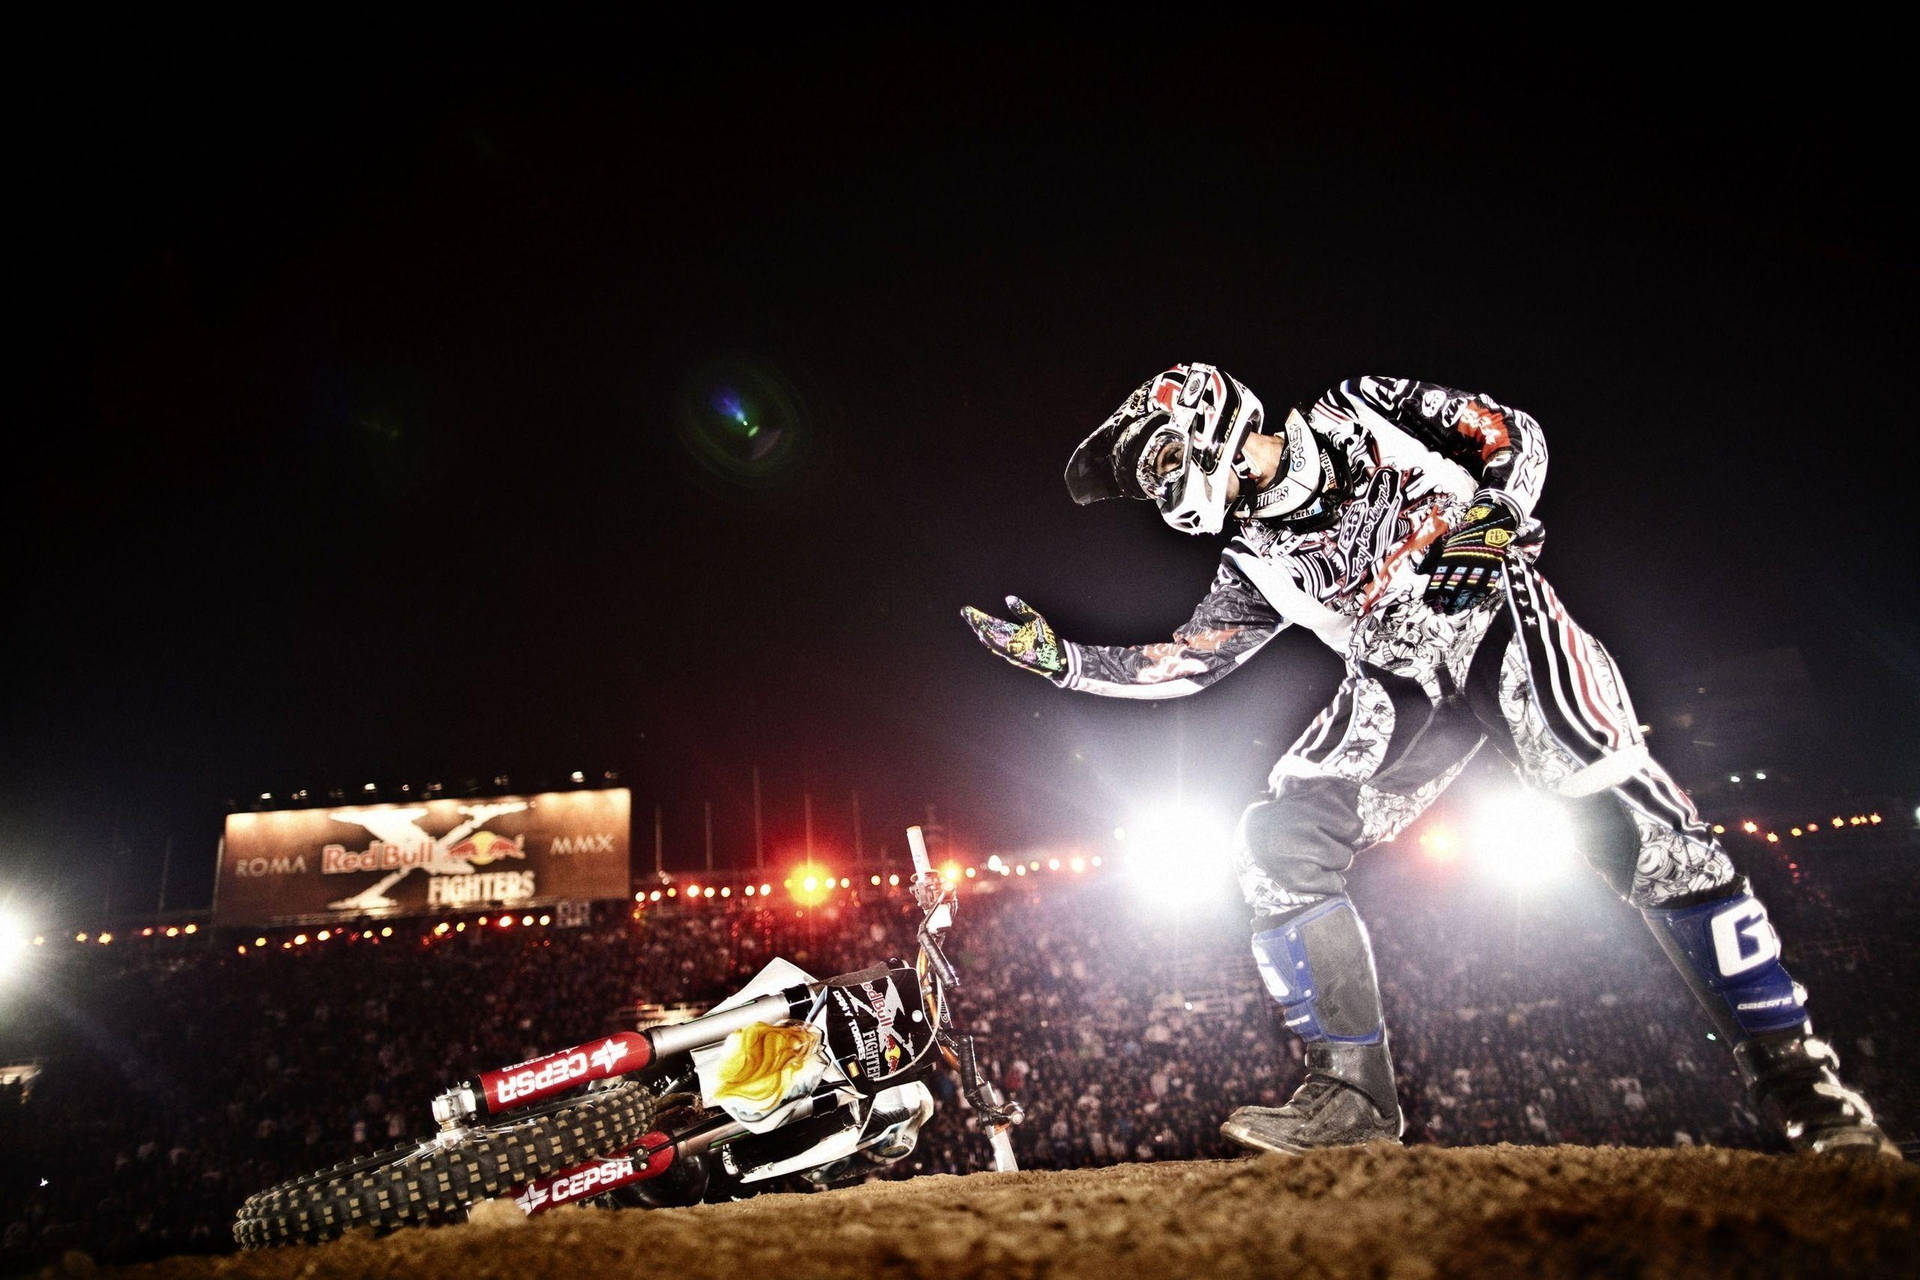 X Games Motocross Rider